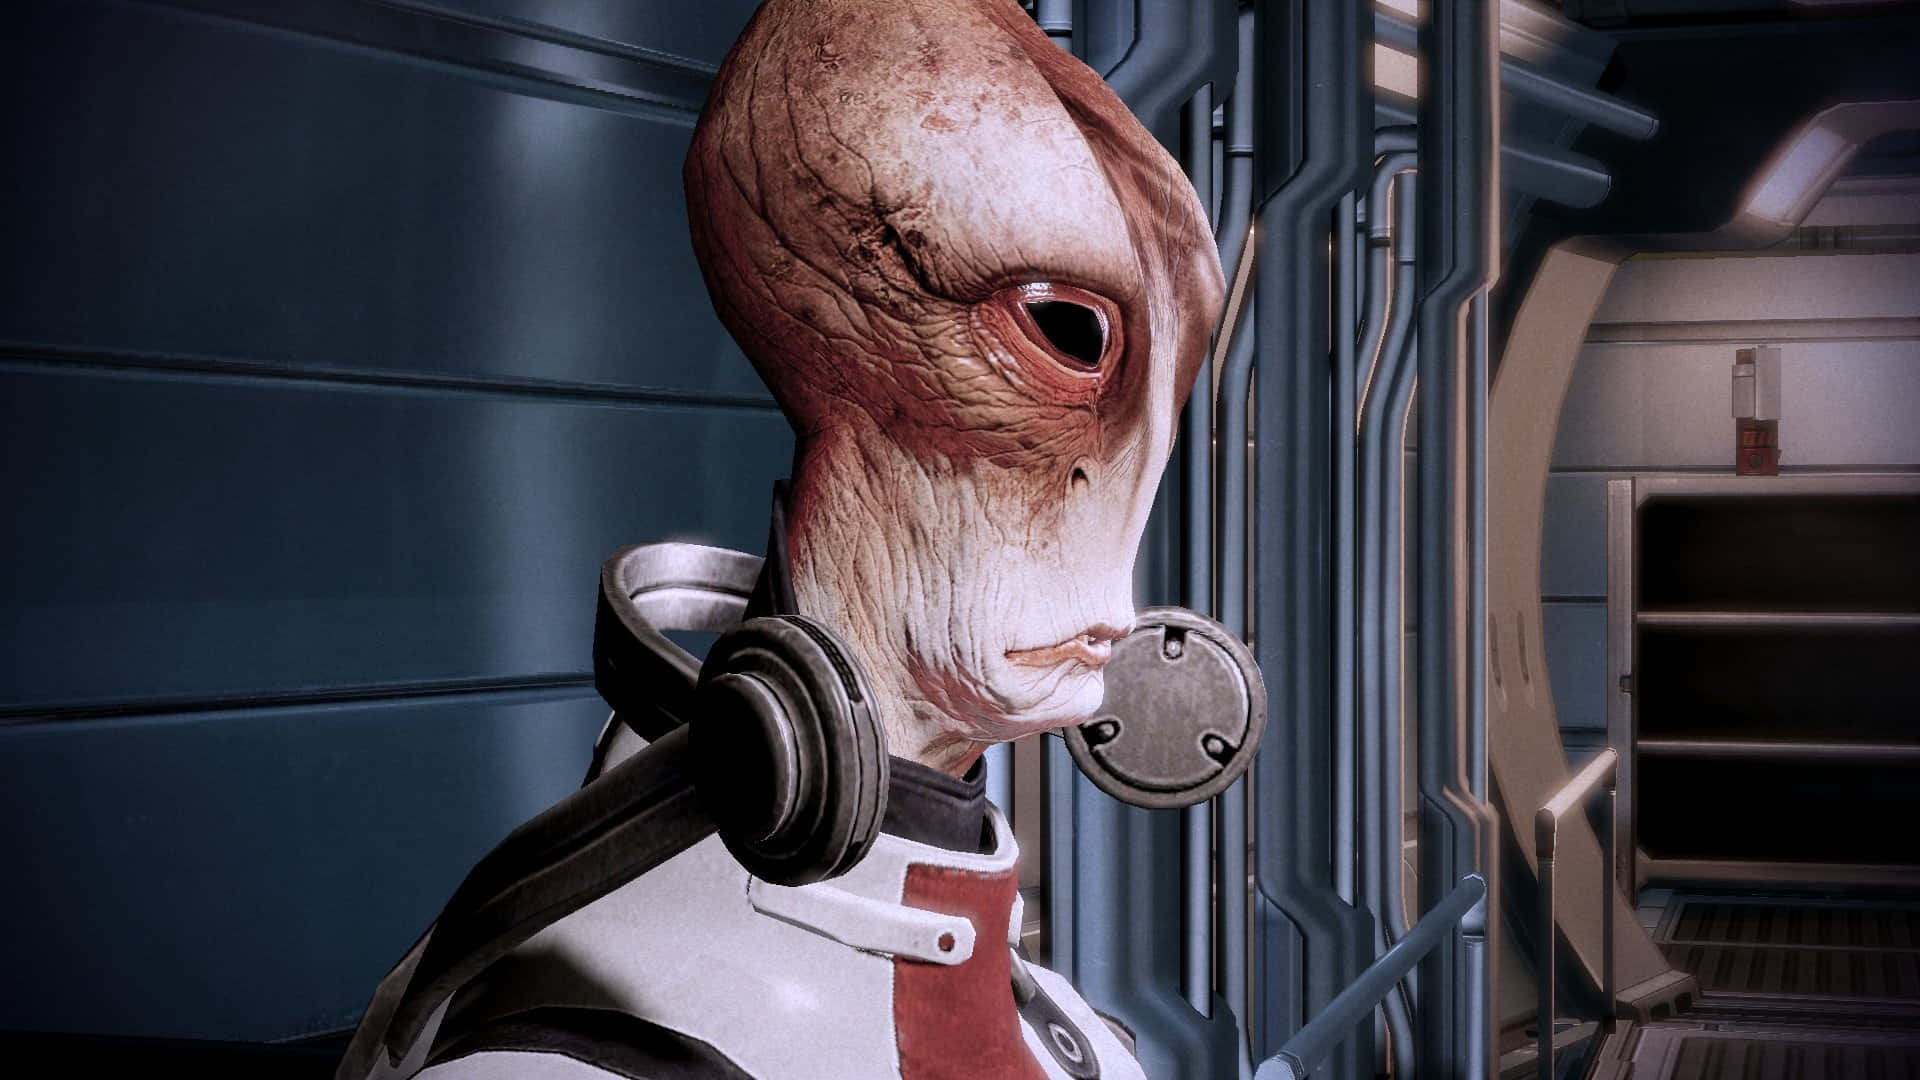 Mordinsolus, El Brillante Científico Salariano De Mass Effect, En Una Pose Impactante En El Campo De Batalla. Fondo de pantalla